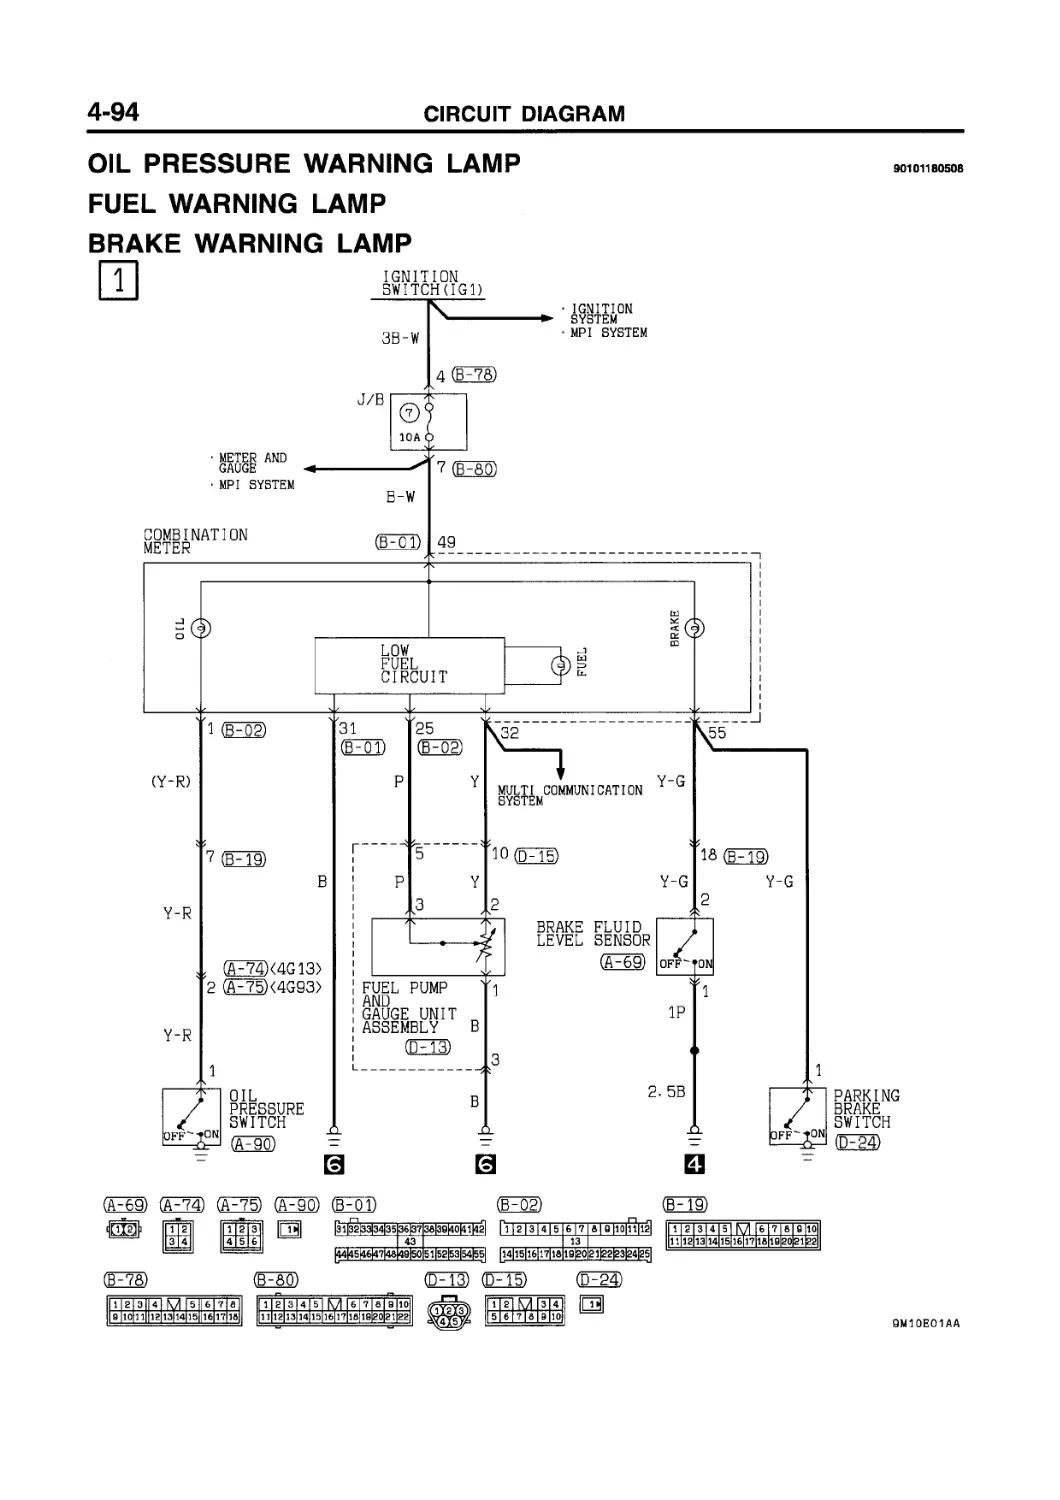 ﻿Контрольная лампа давления масл
﻿Контрольная лампа уровня топлив
﻿Контрольная лампа тормозной систем